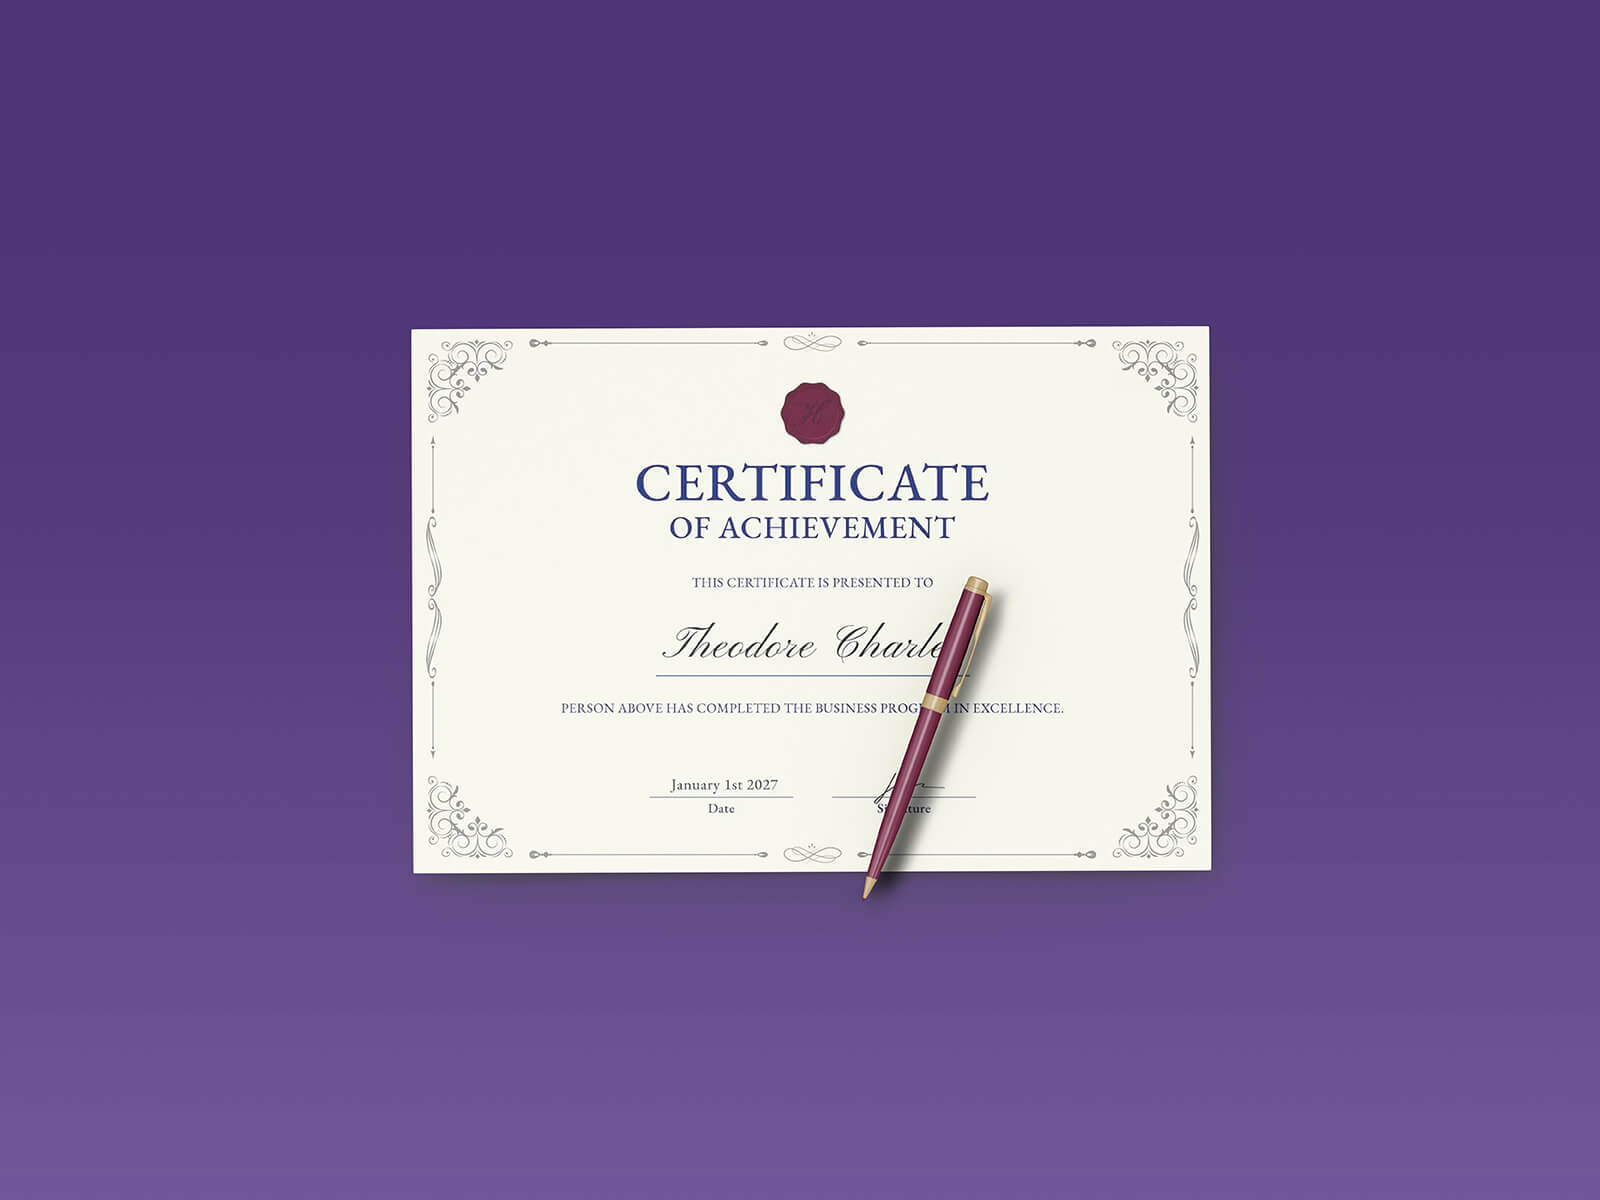 Maqueta de certificado / diploma